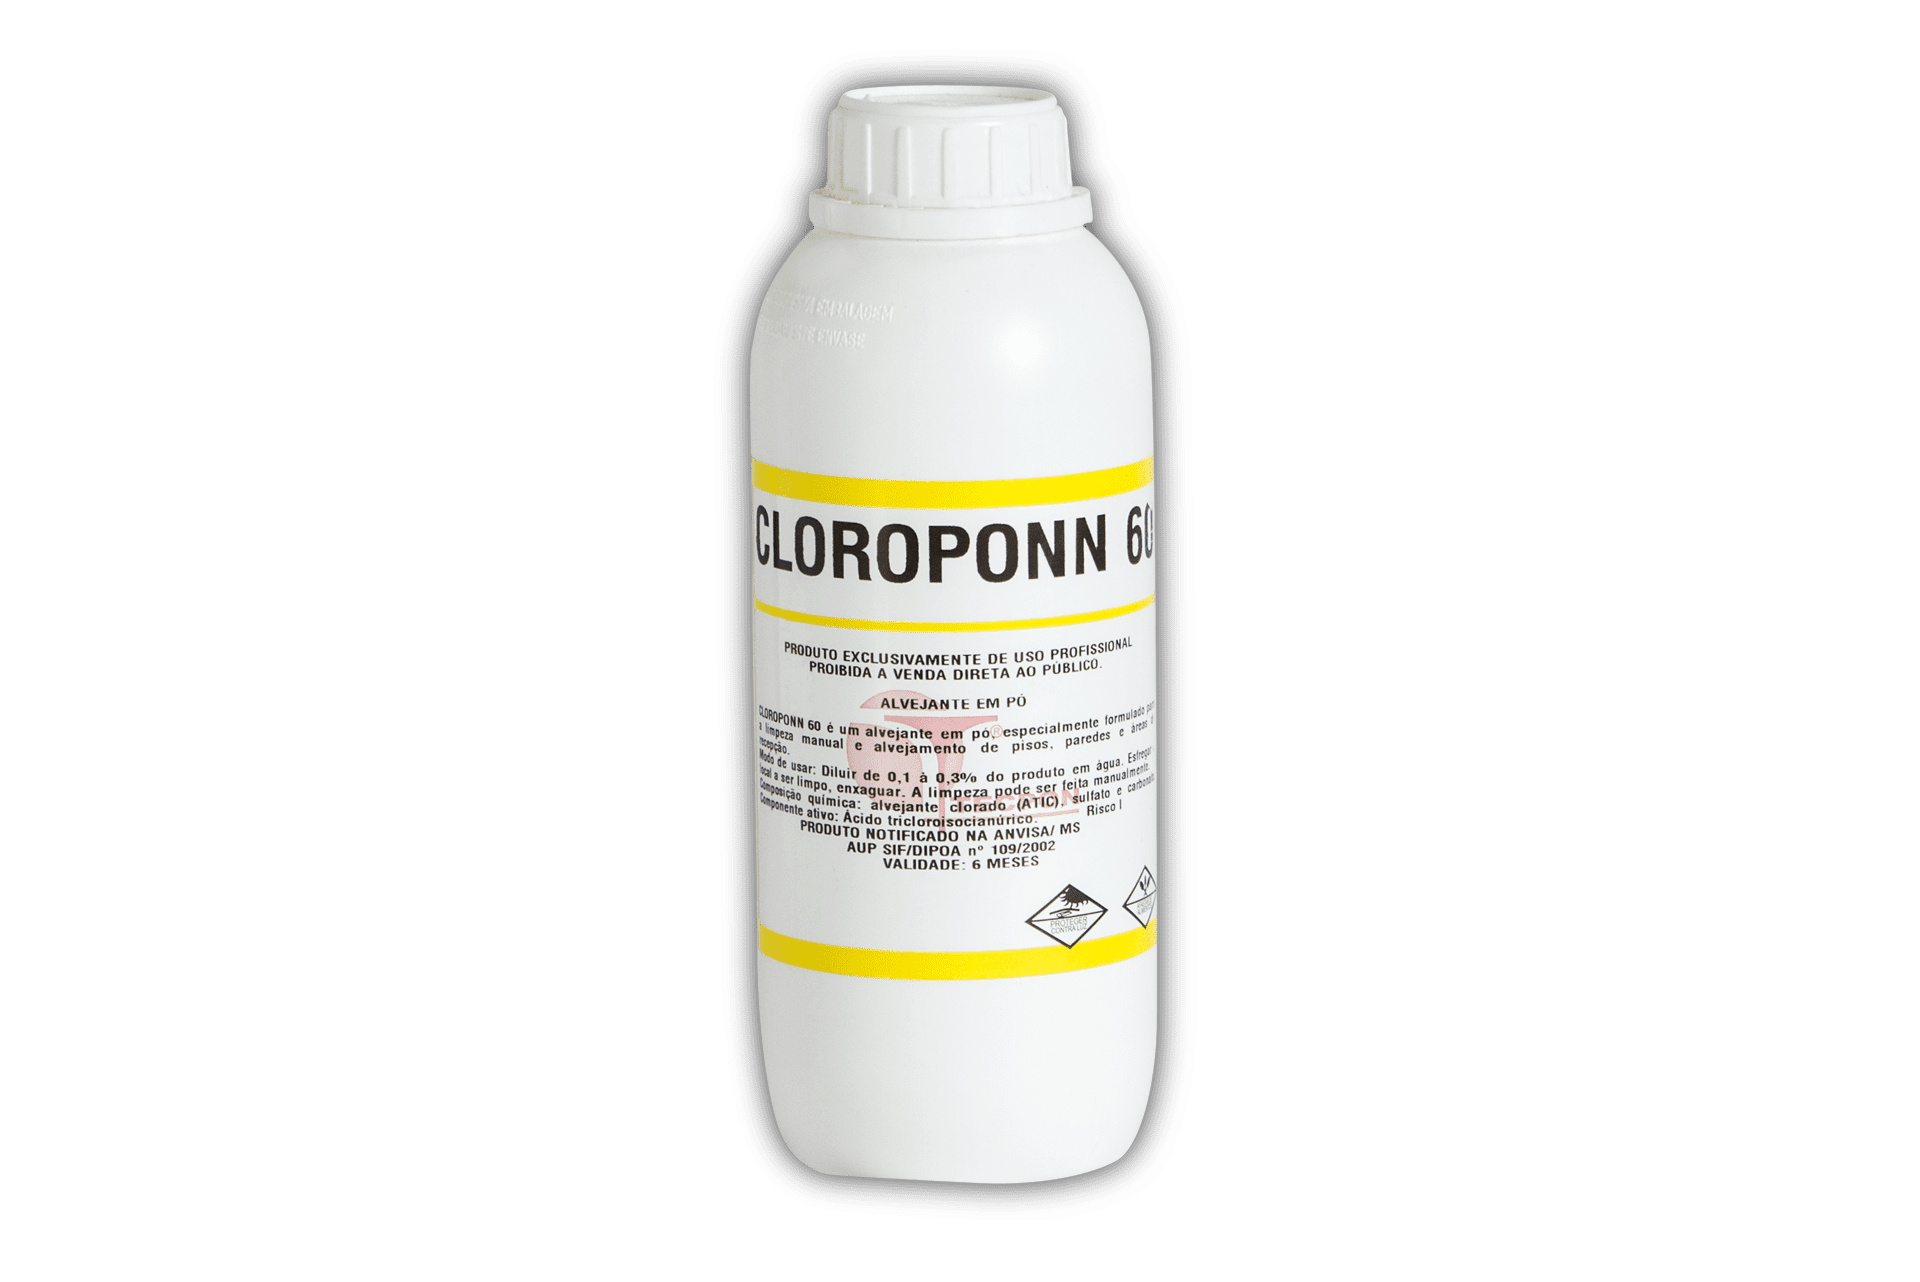 Foto do produto Cloroponn 60 1 kg. para visualização